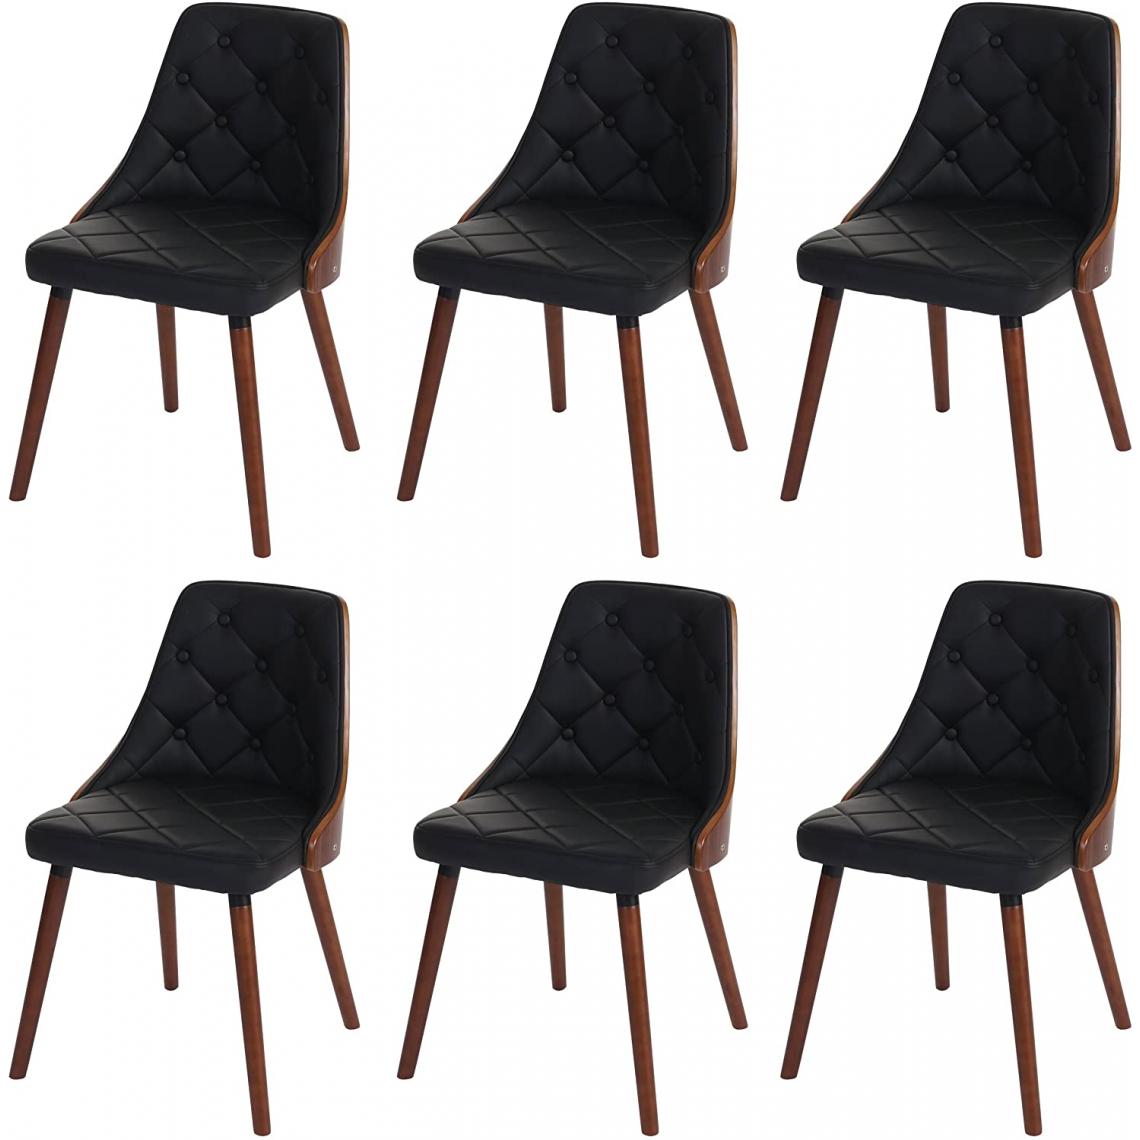 Decoshop26 - Lot de 6 chaises de salle à manger capitonné design chic en bois noyer et assise en similicuir noir CDS04668 - Chaises